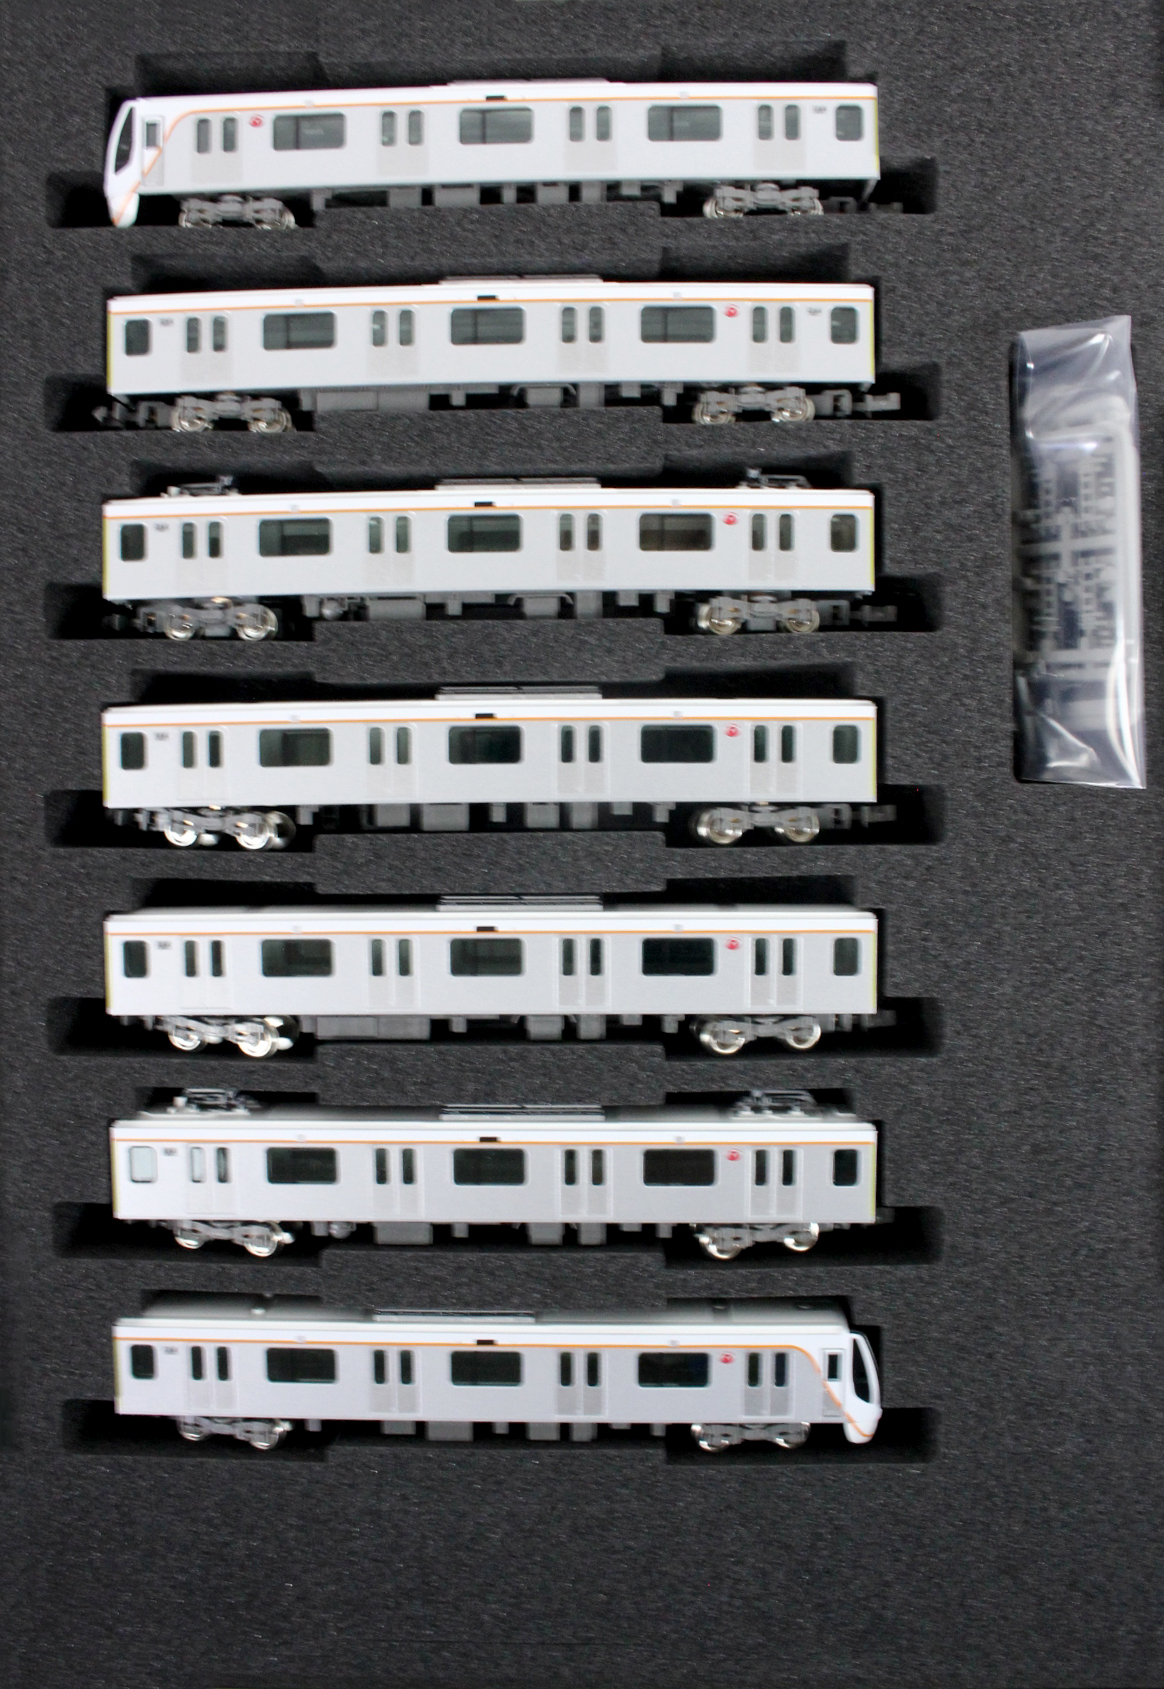 グリーンマックス 30750 東急6020系 (大井町線) 7両セット 鉄道模型 N 